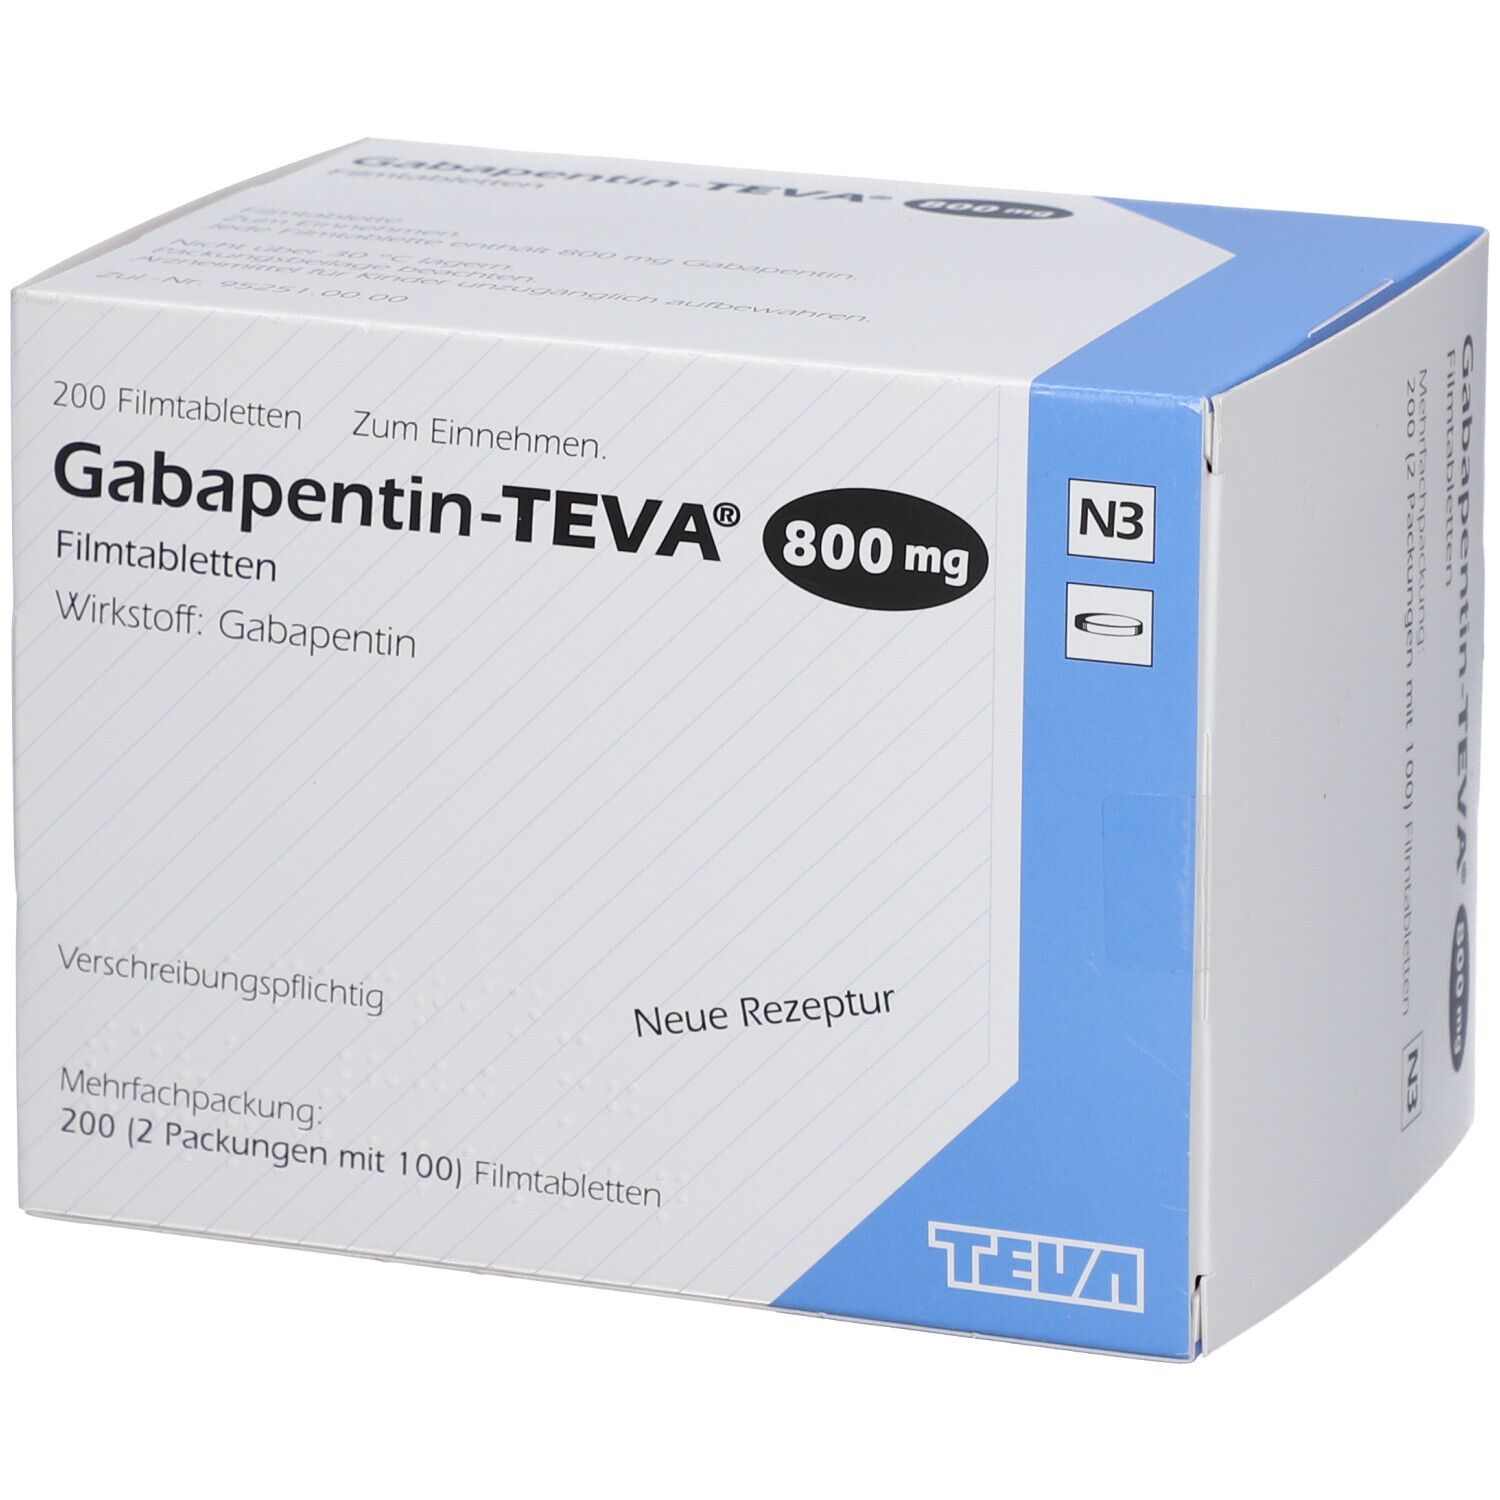 Габапентин 200. Нейронтин 800 мг. Таблетки от эпилепсии габапентин. Габапентин таблетки.